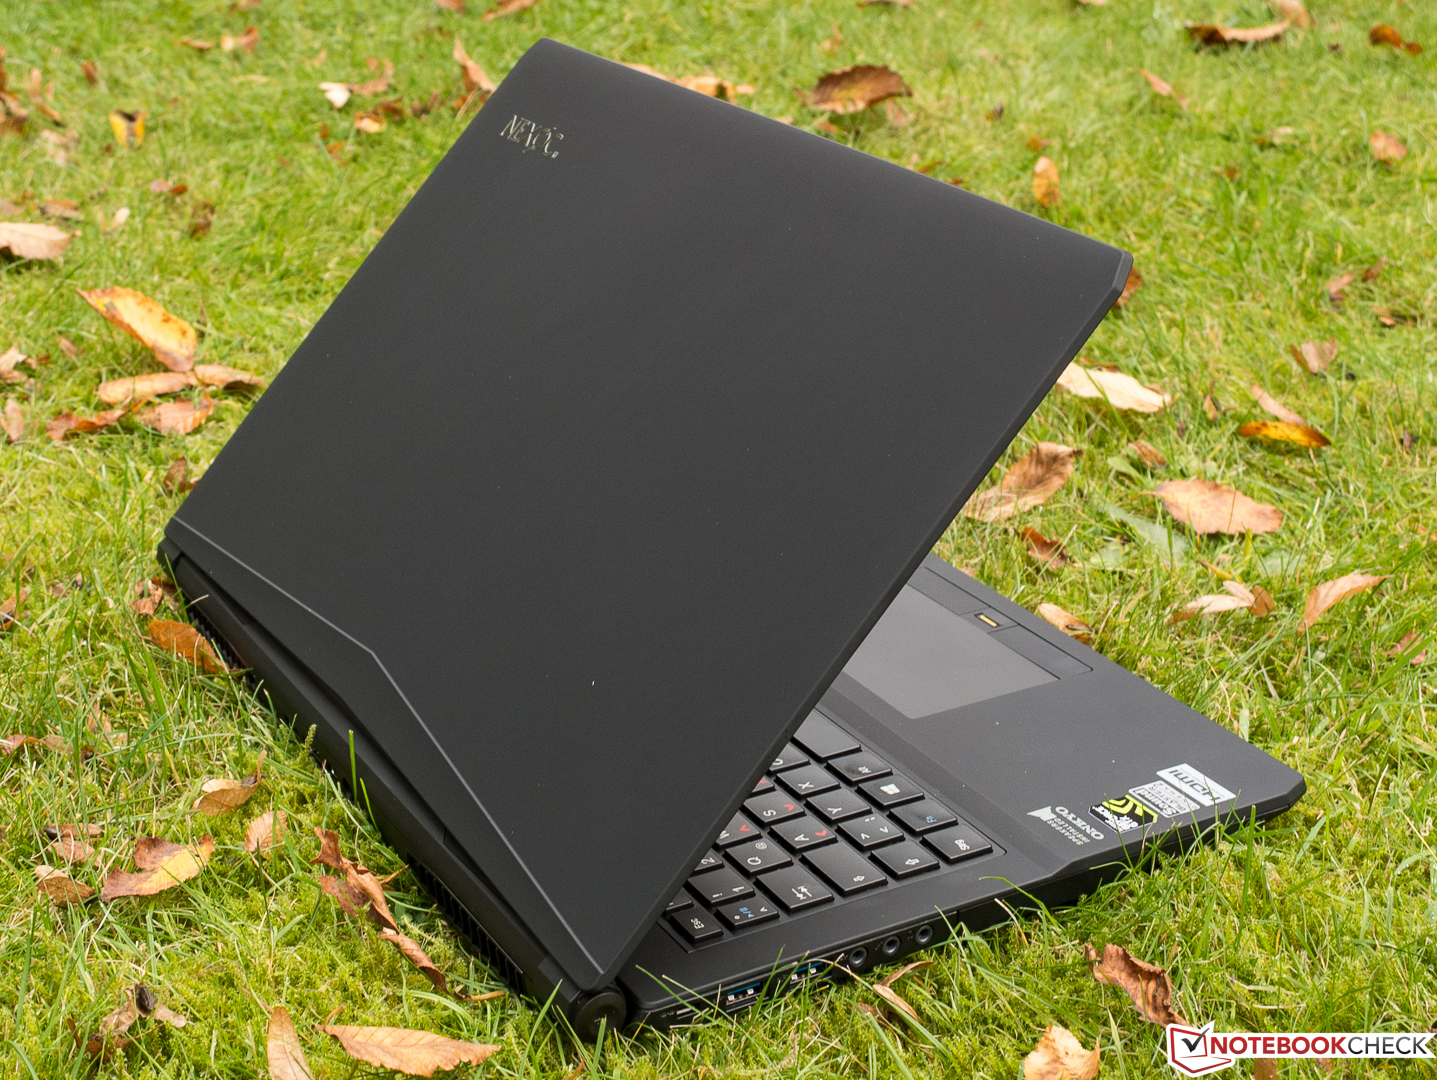 Nexoc G515 II (Clevo N150RD) Notebook Review - NotebookCheck.net ...